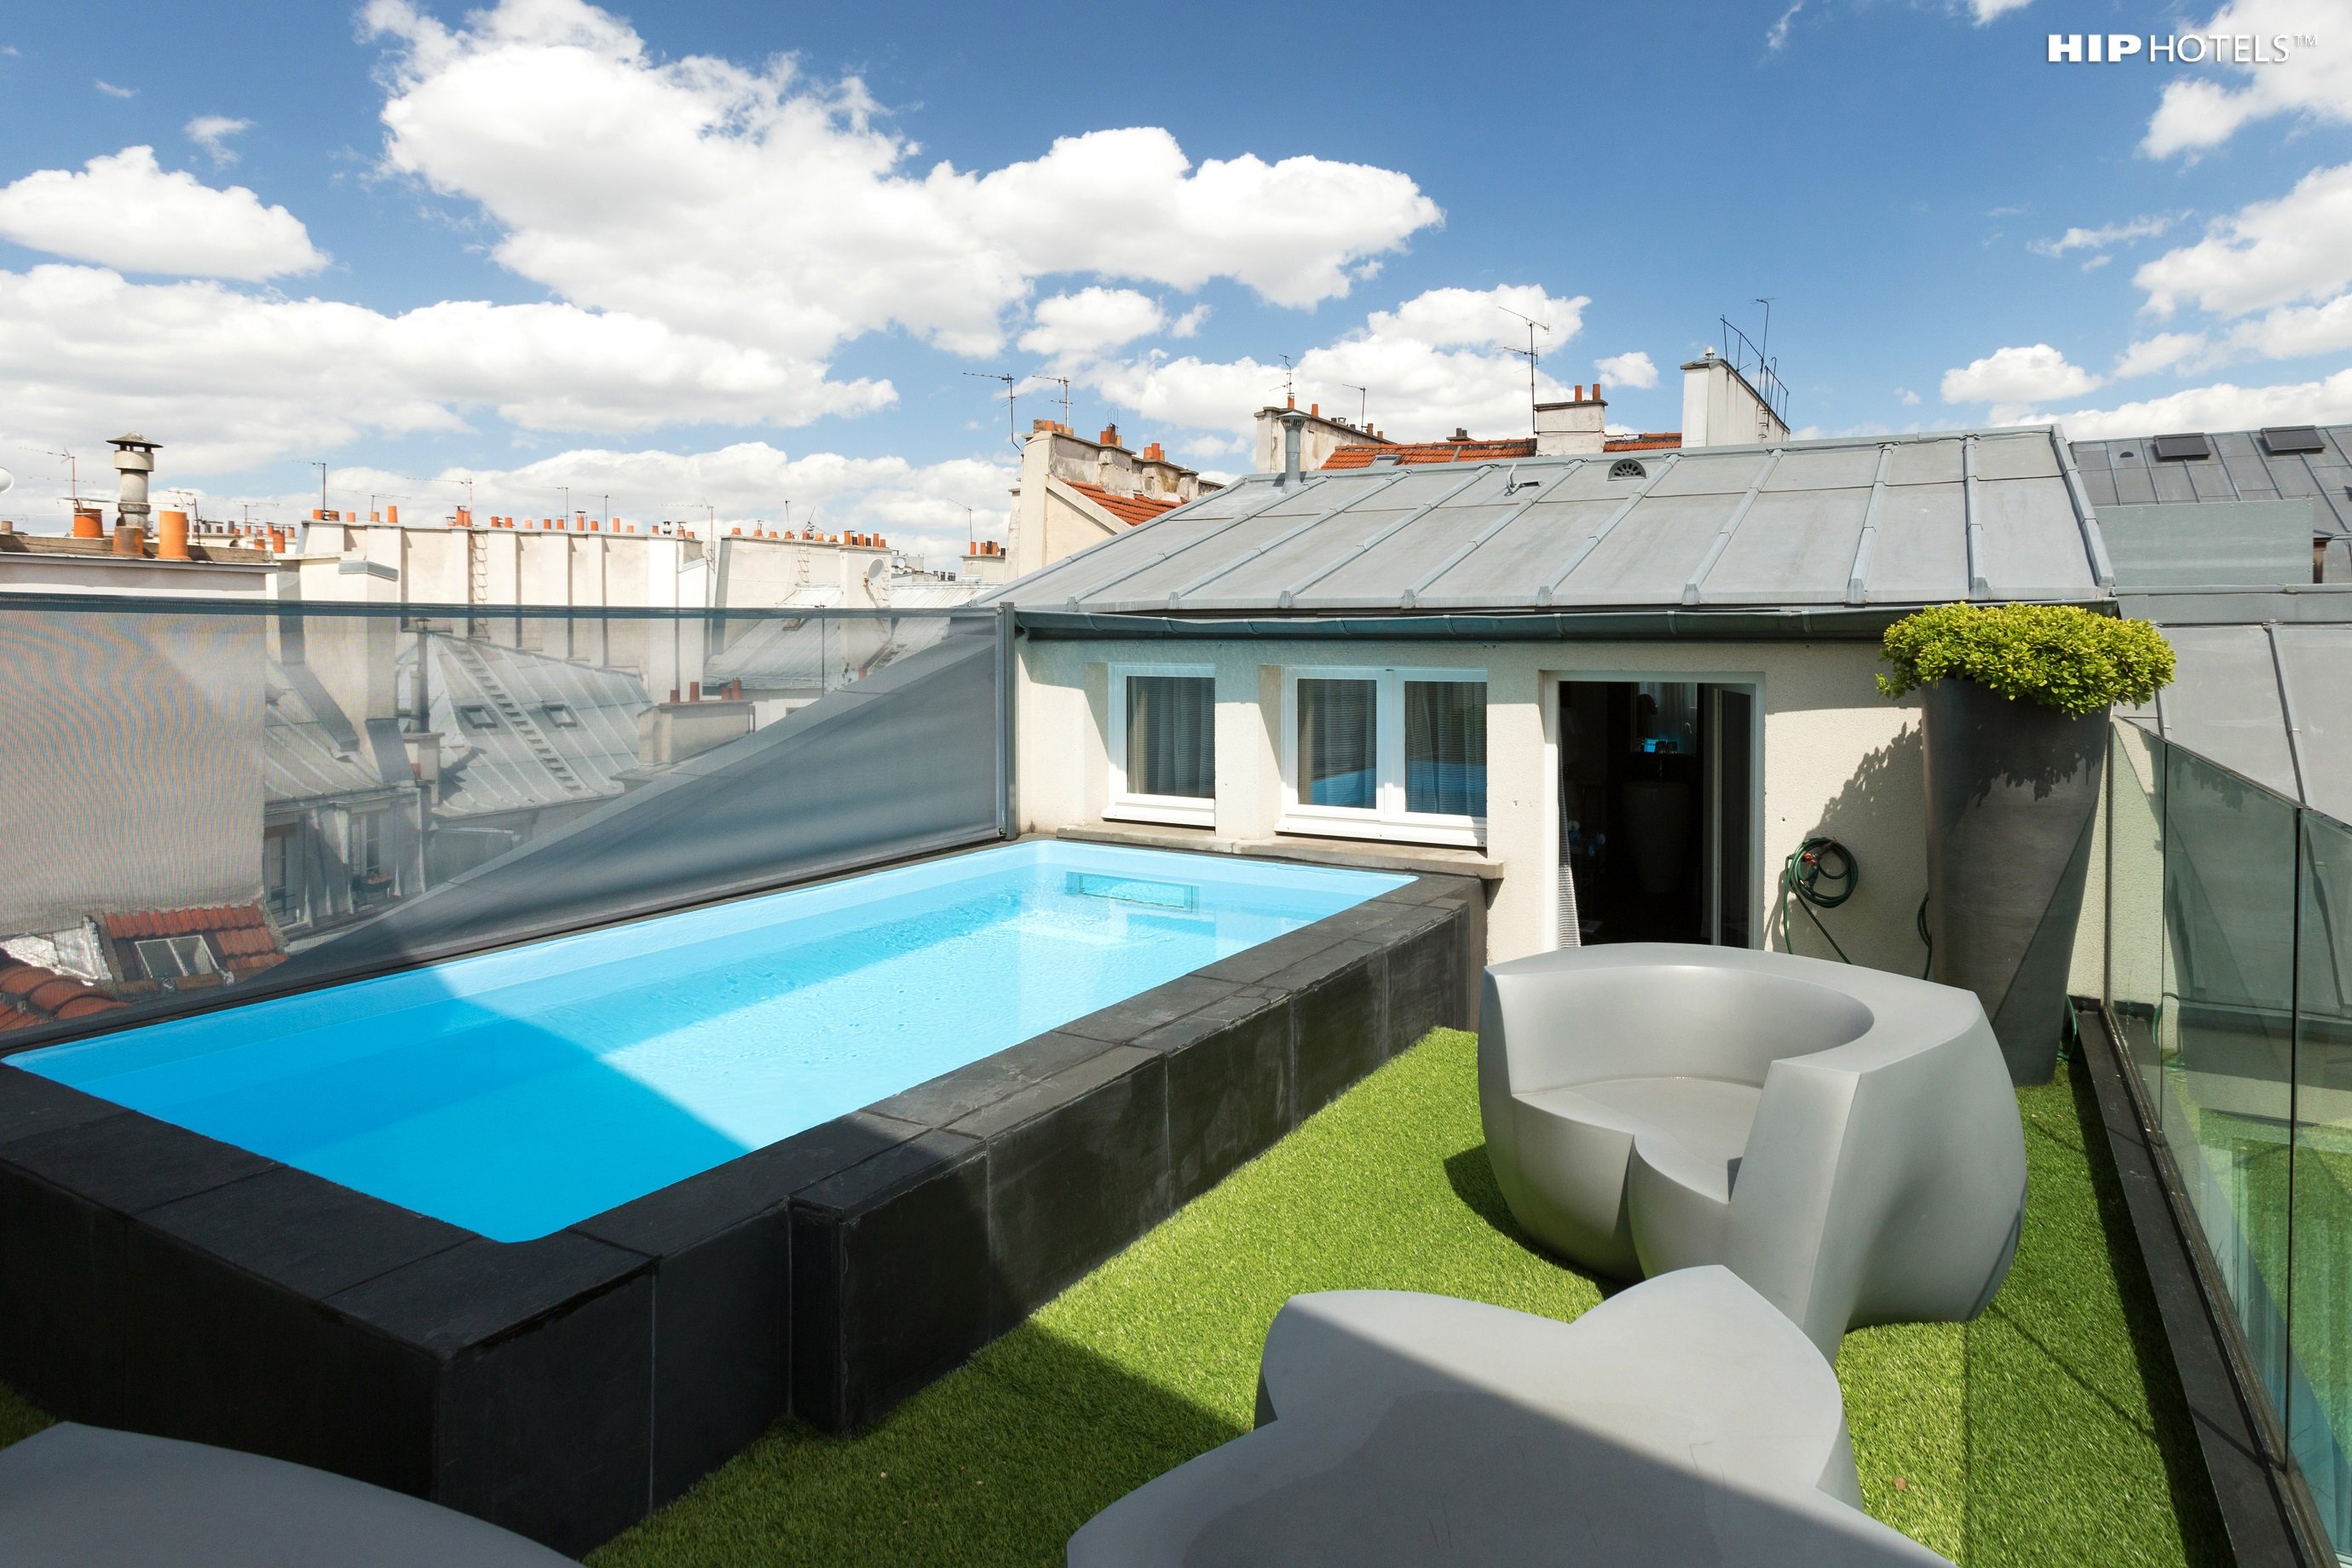 1K Paris - Suite Piscine - Rooftop